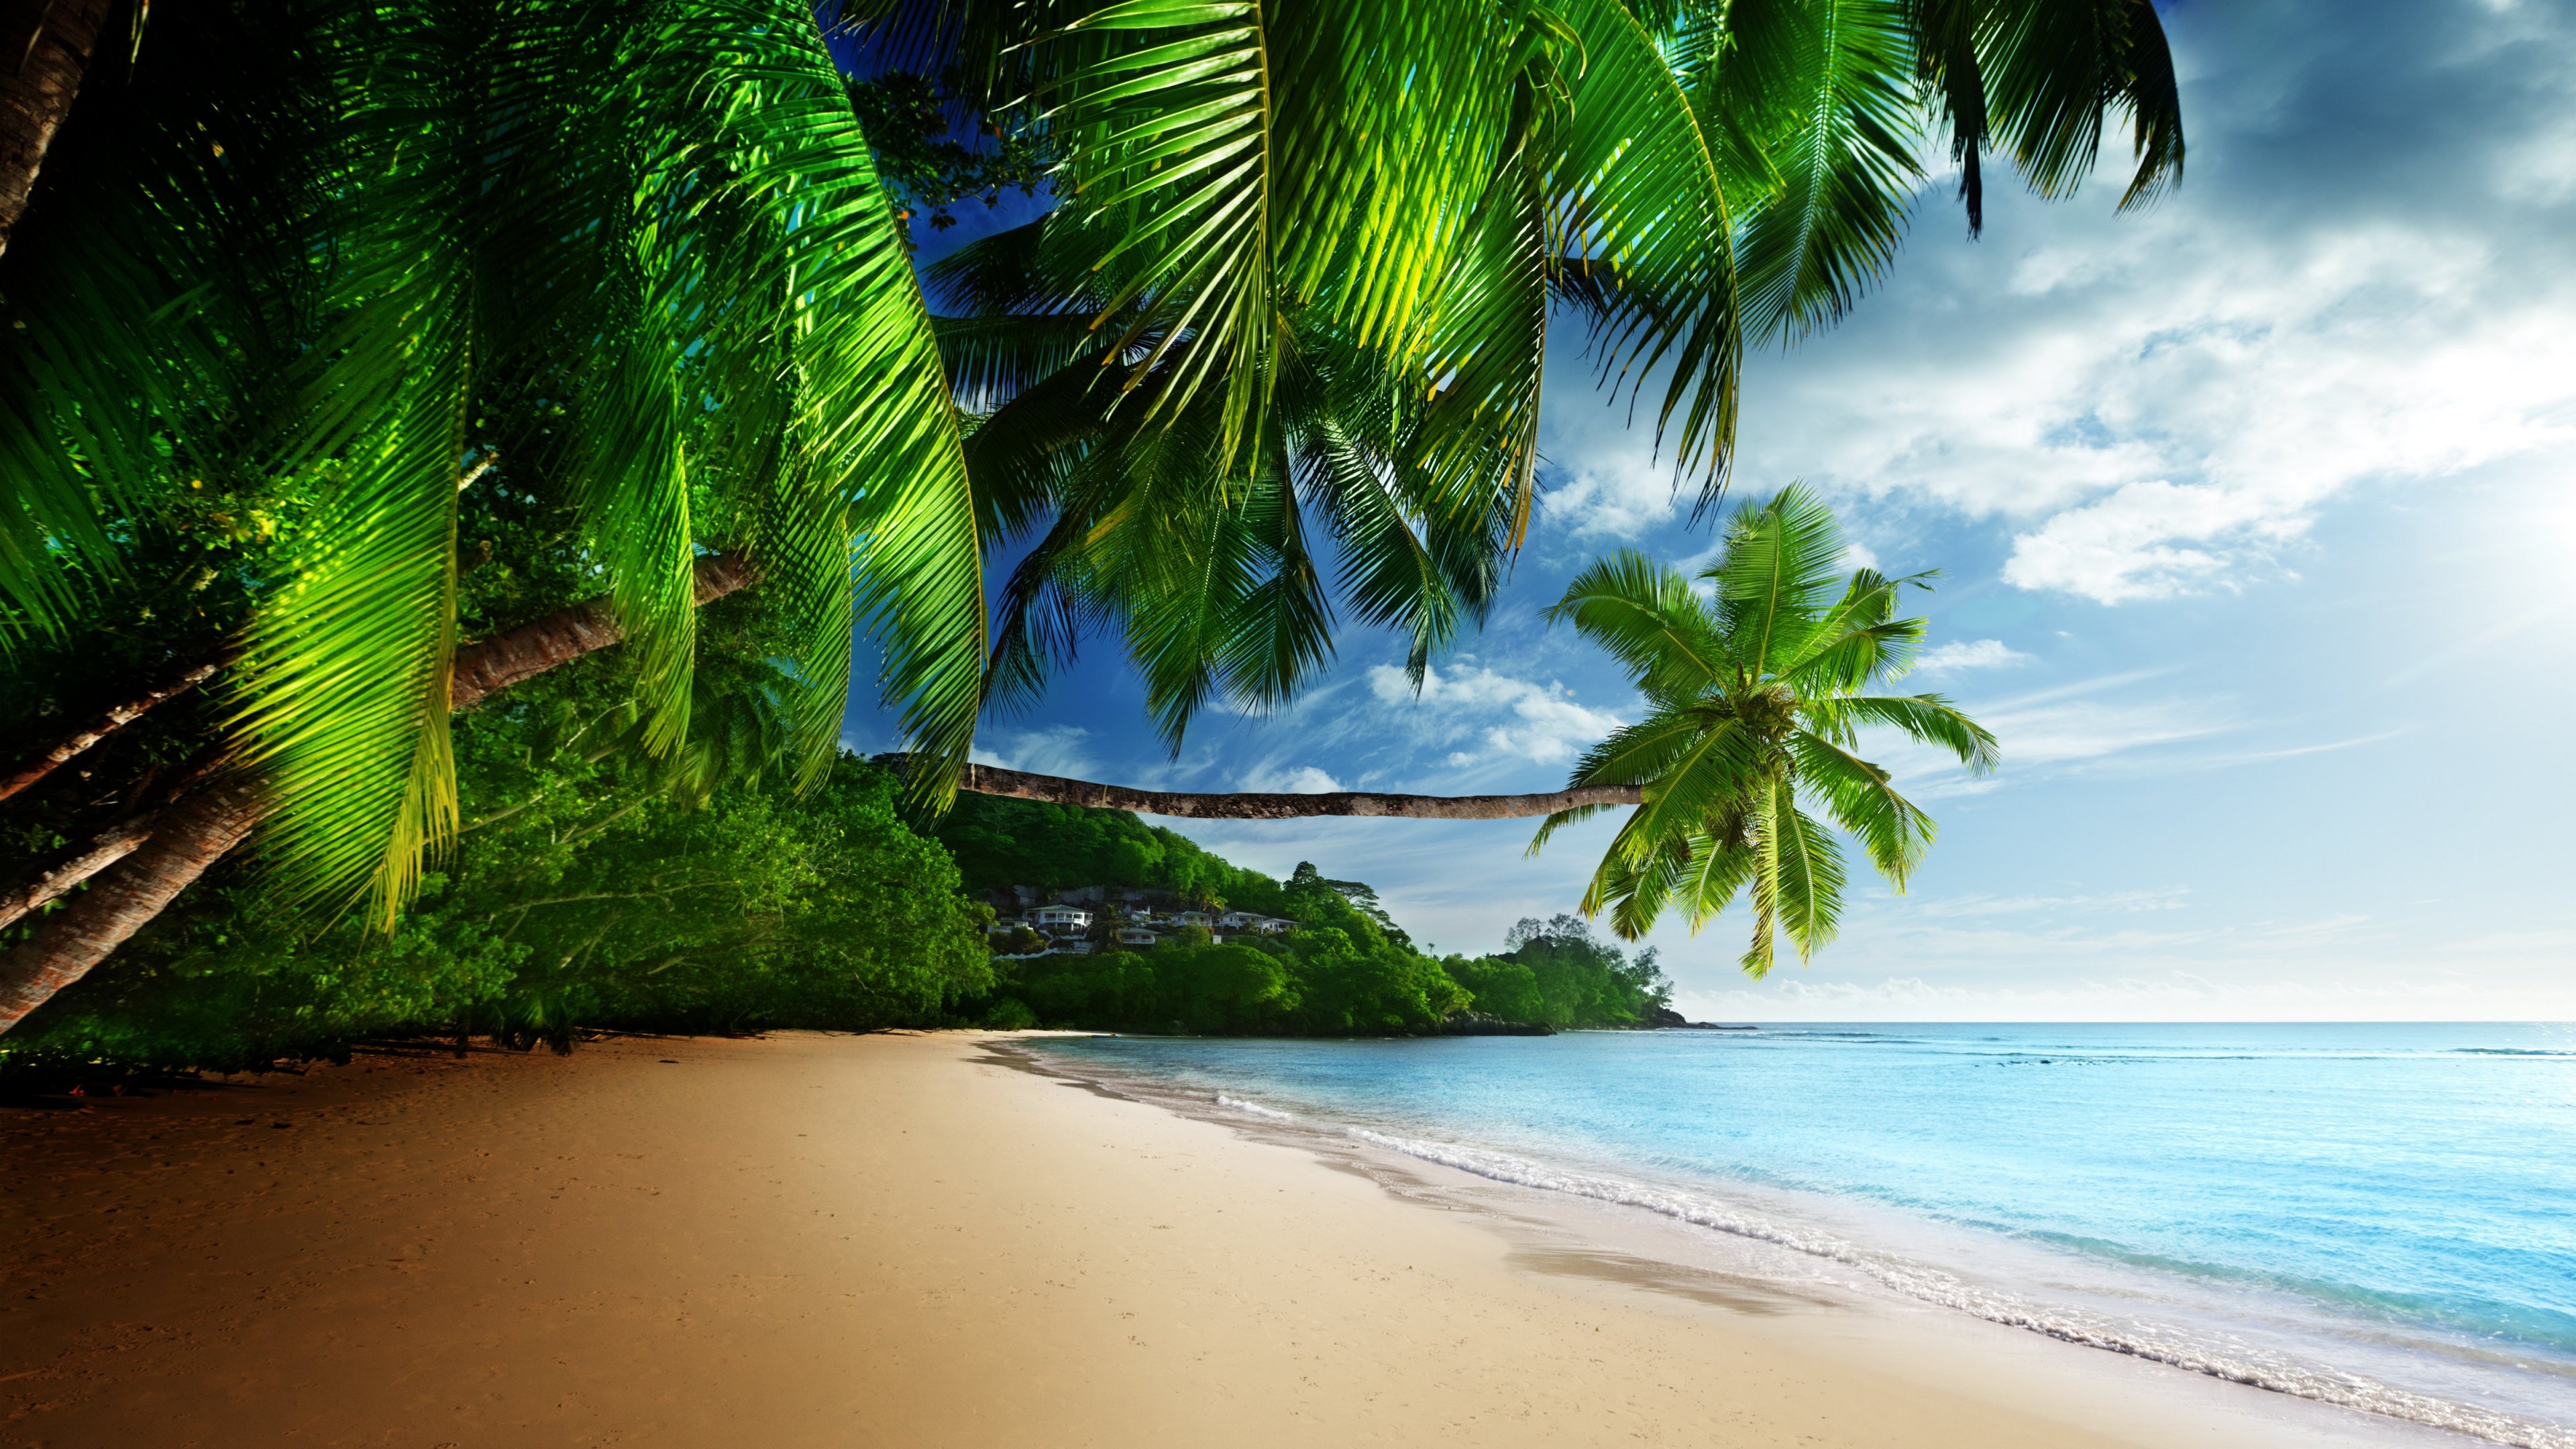 Hình ảnh bãi biển nhiệt đới HD sẽ đưa bạn đến với những bãi biển đầy màu sắc và sự sống động. Nhìn thế giới dưới con mắt HD, bạn sẽ cảm nhận được các hạt cát và những đợt sóng xô bờ từng cơn. Bãi biển nhiệt đới HD sẽ mang đến cho bạn một trải nghiệm tuyệt vời trong suốt ngày hè nóng bức.